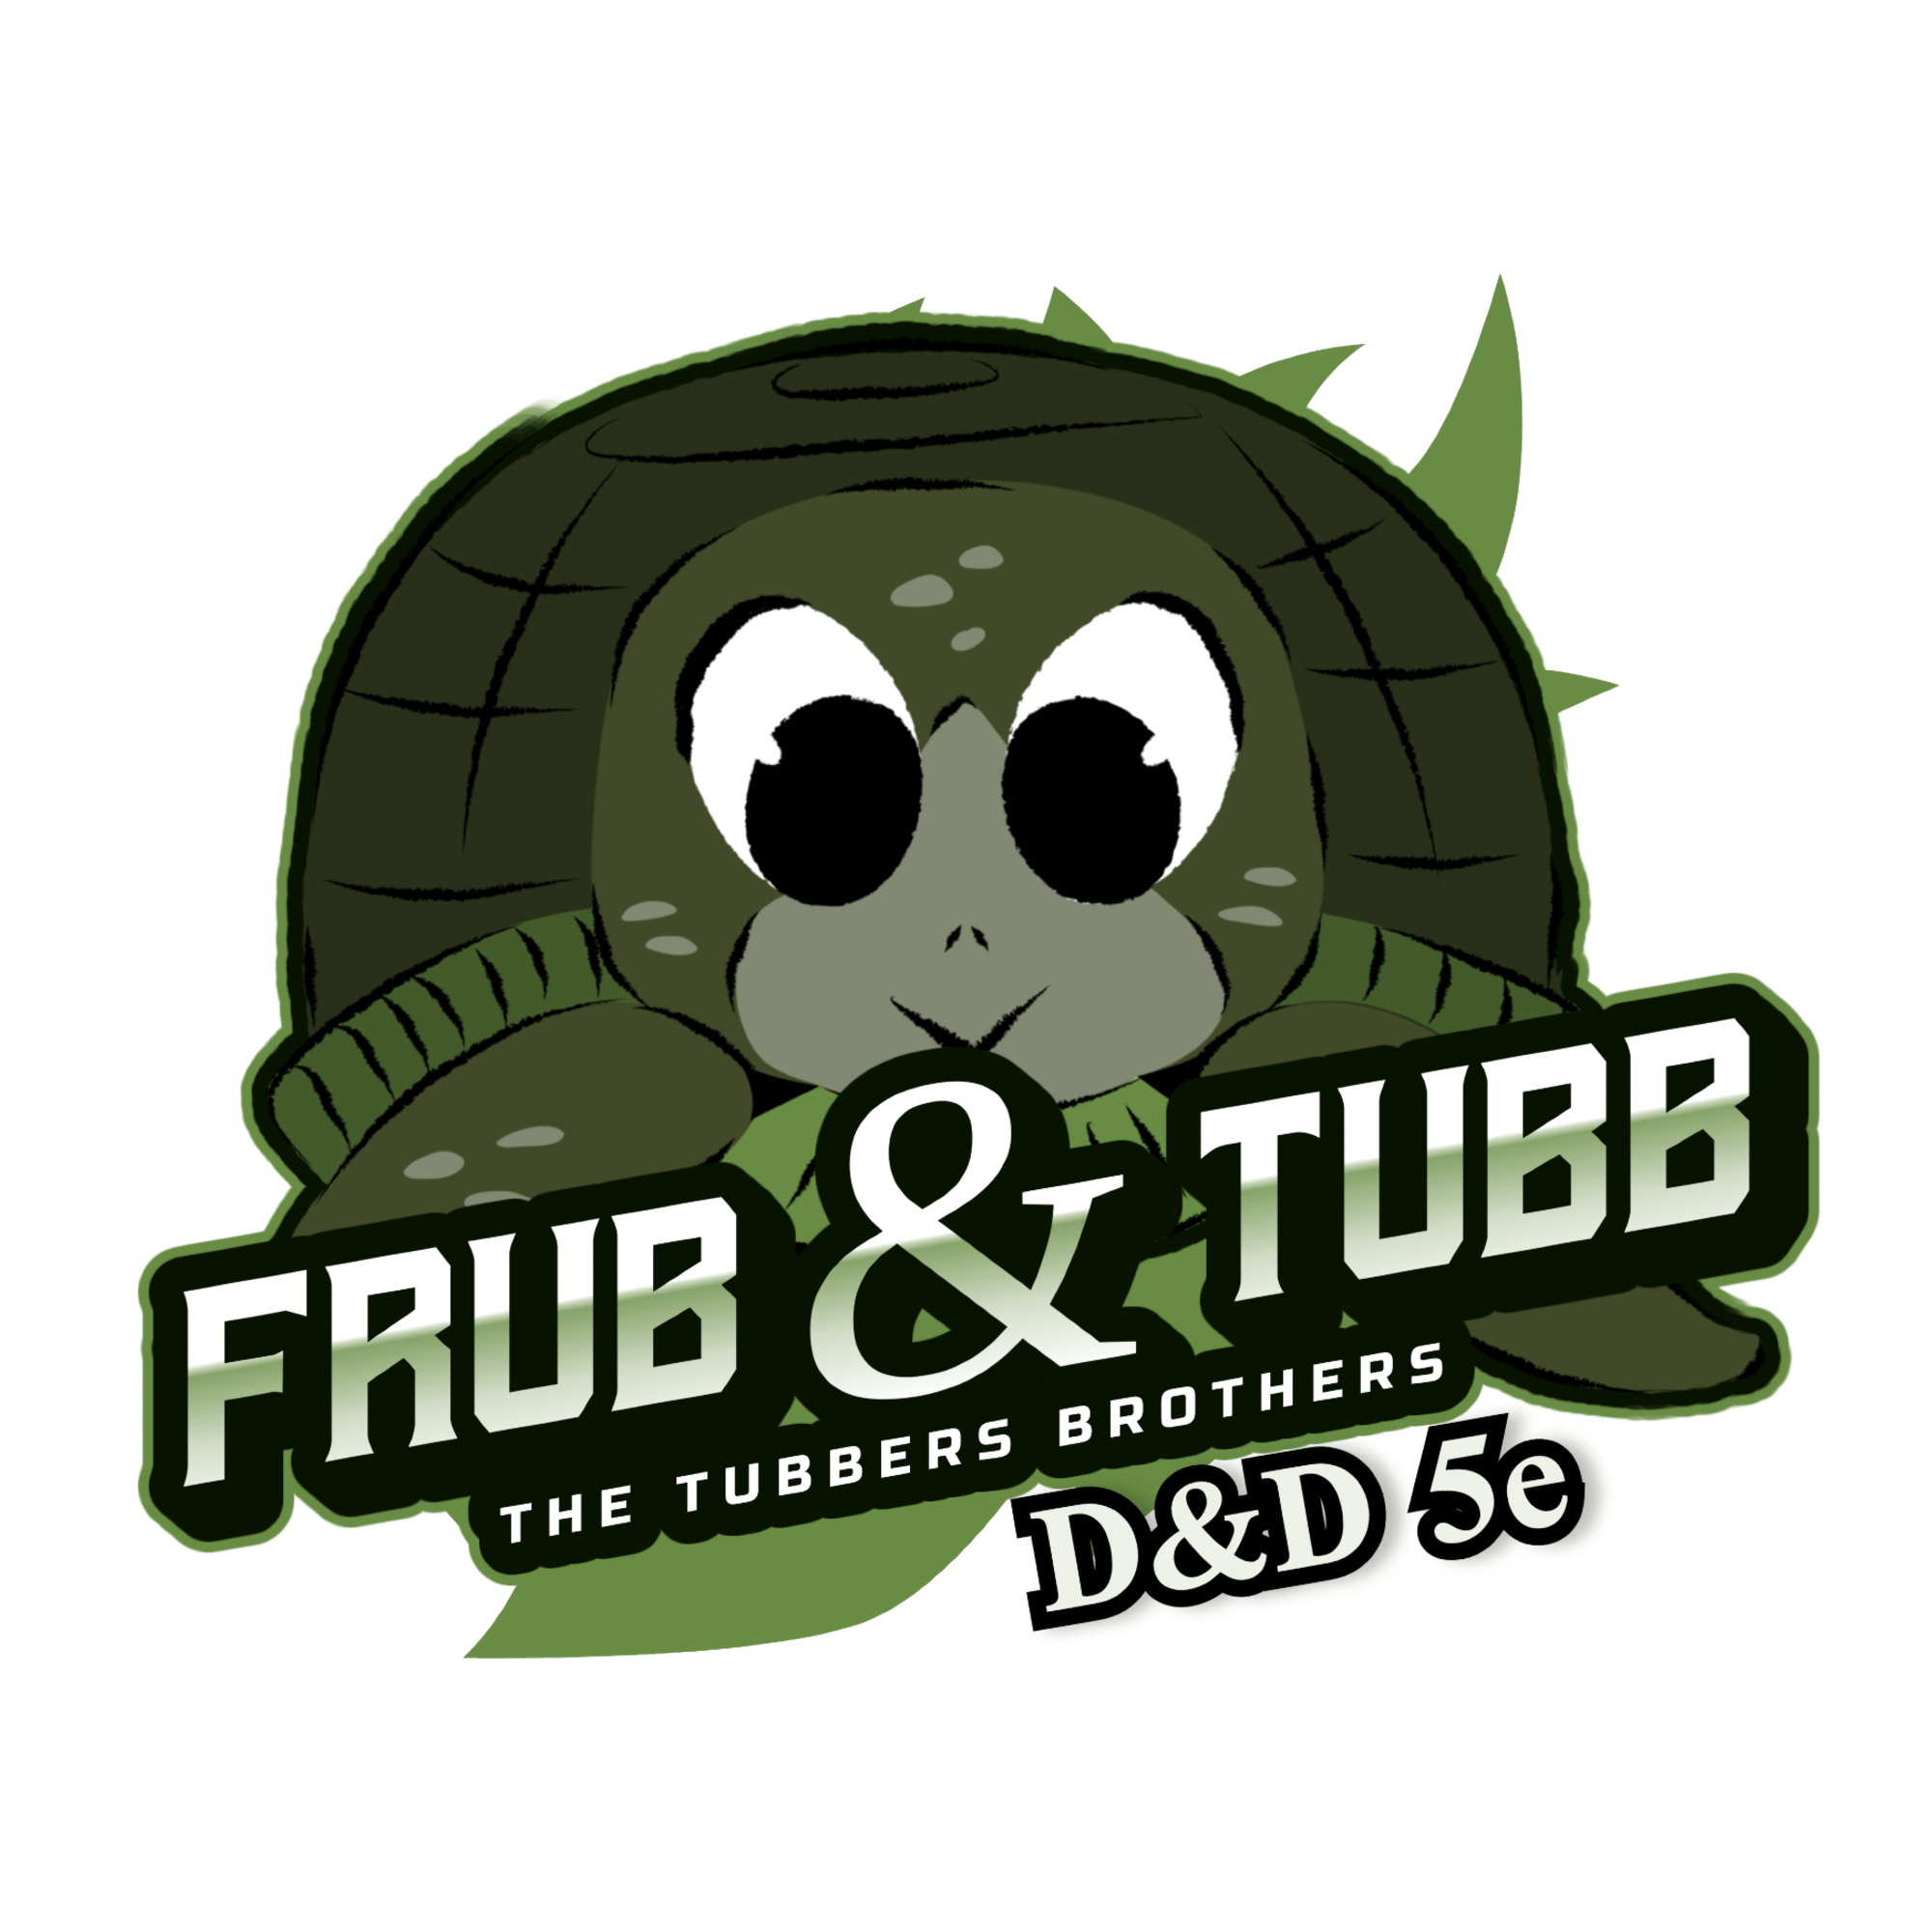 Frub and Tubb